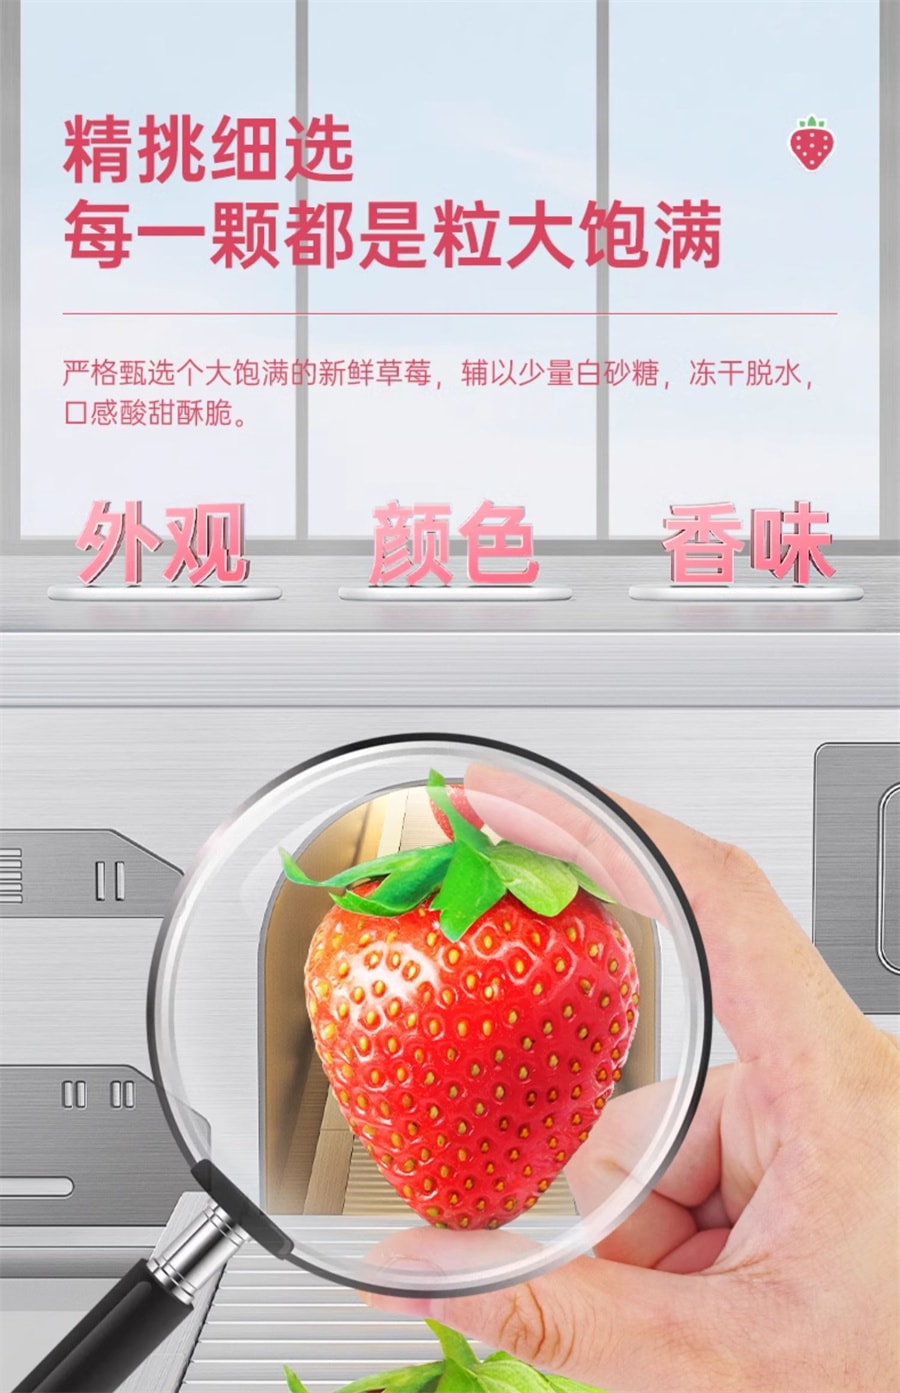 【中国直邮】比比赞 冻干草莓水果干脆果脯草莓干冻干健康零食小吃网红休闲食品 38g/袋